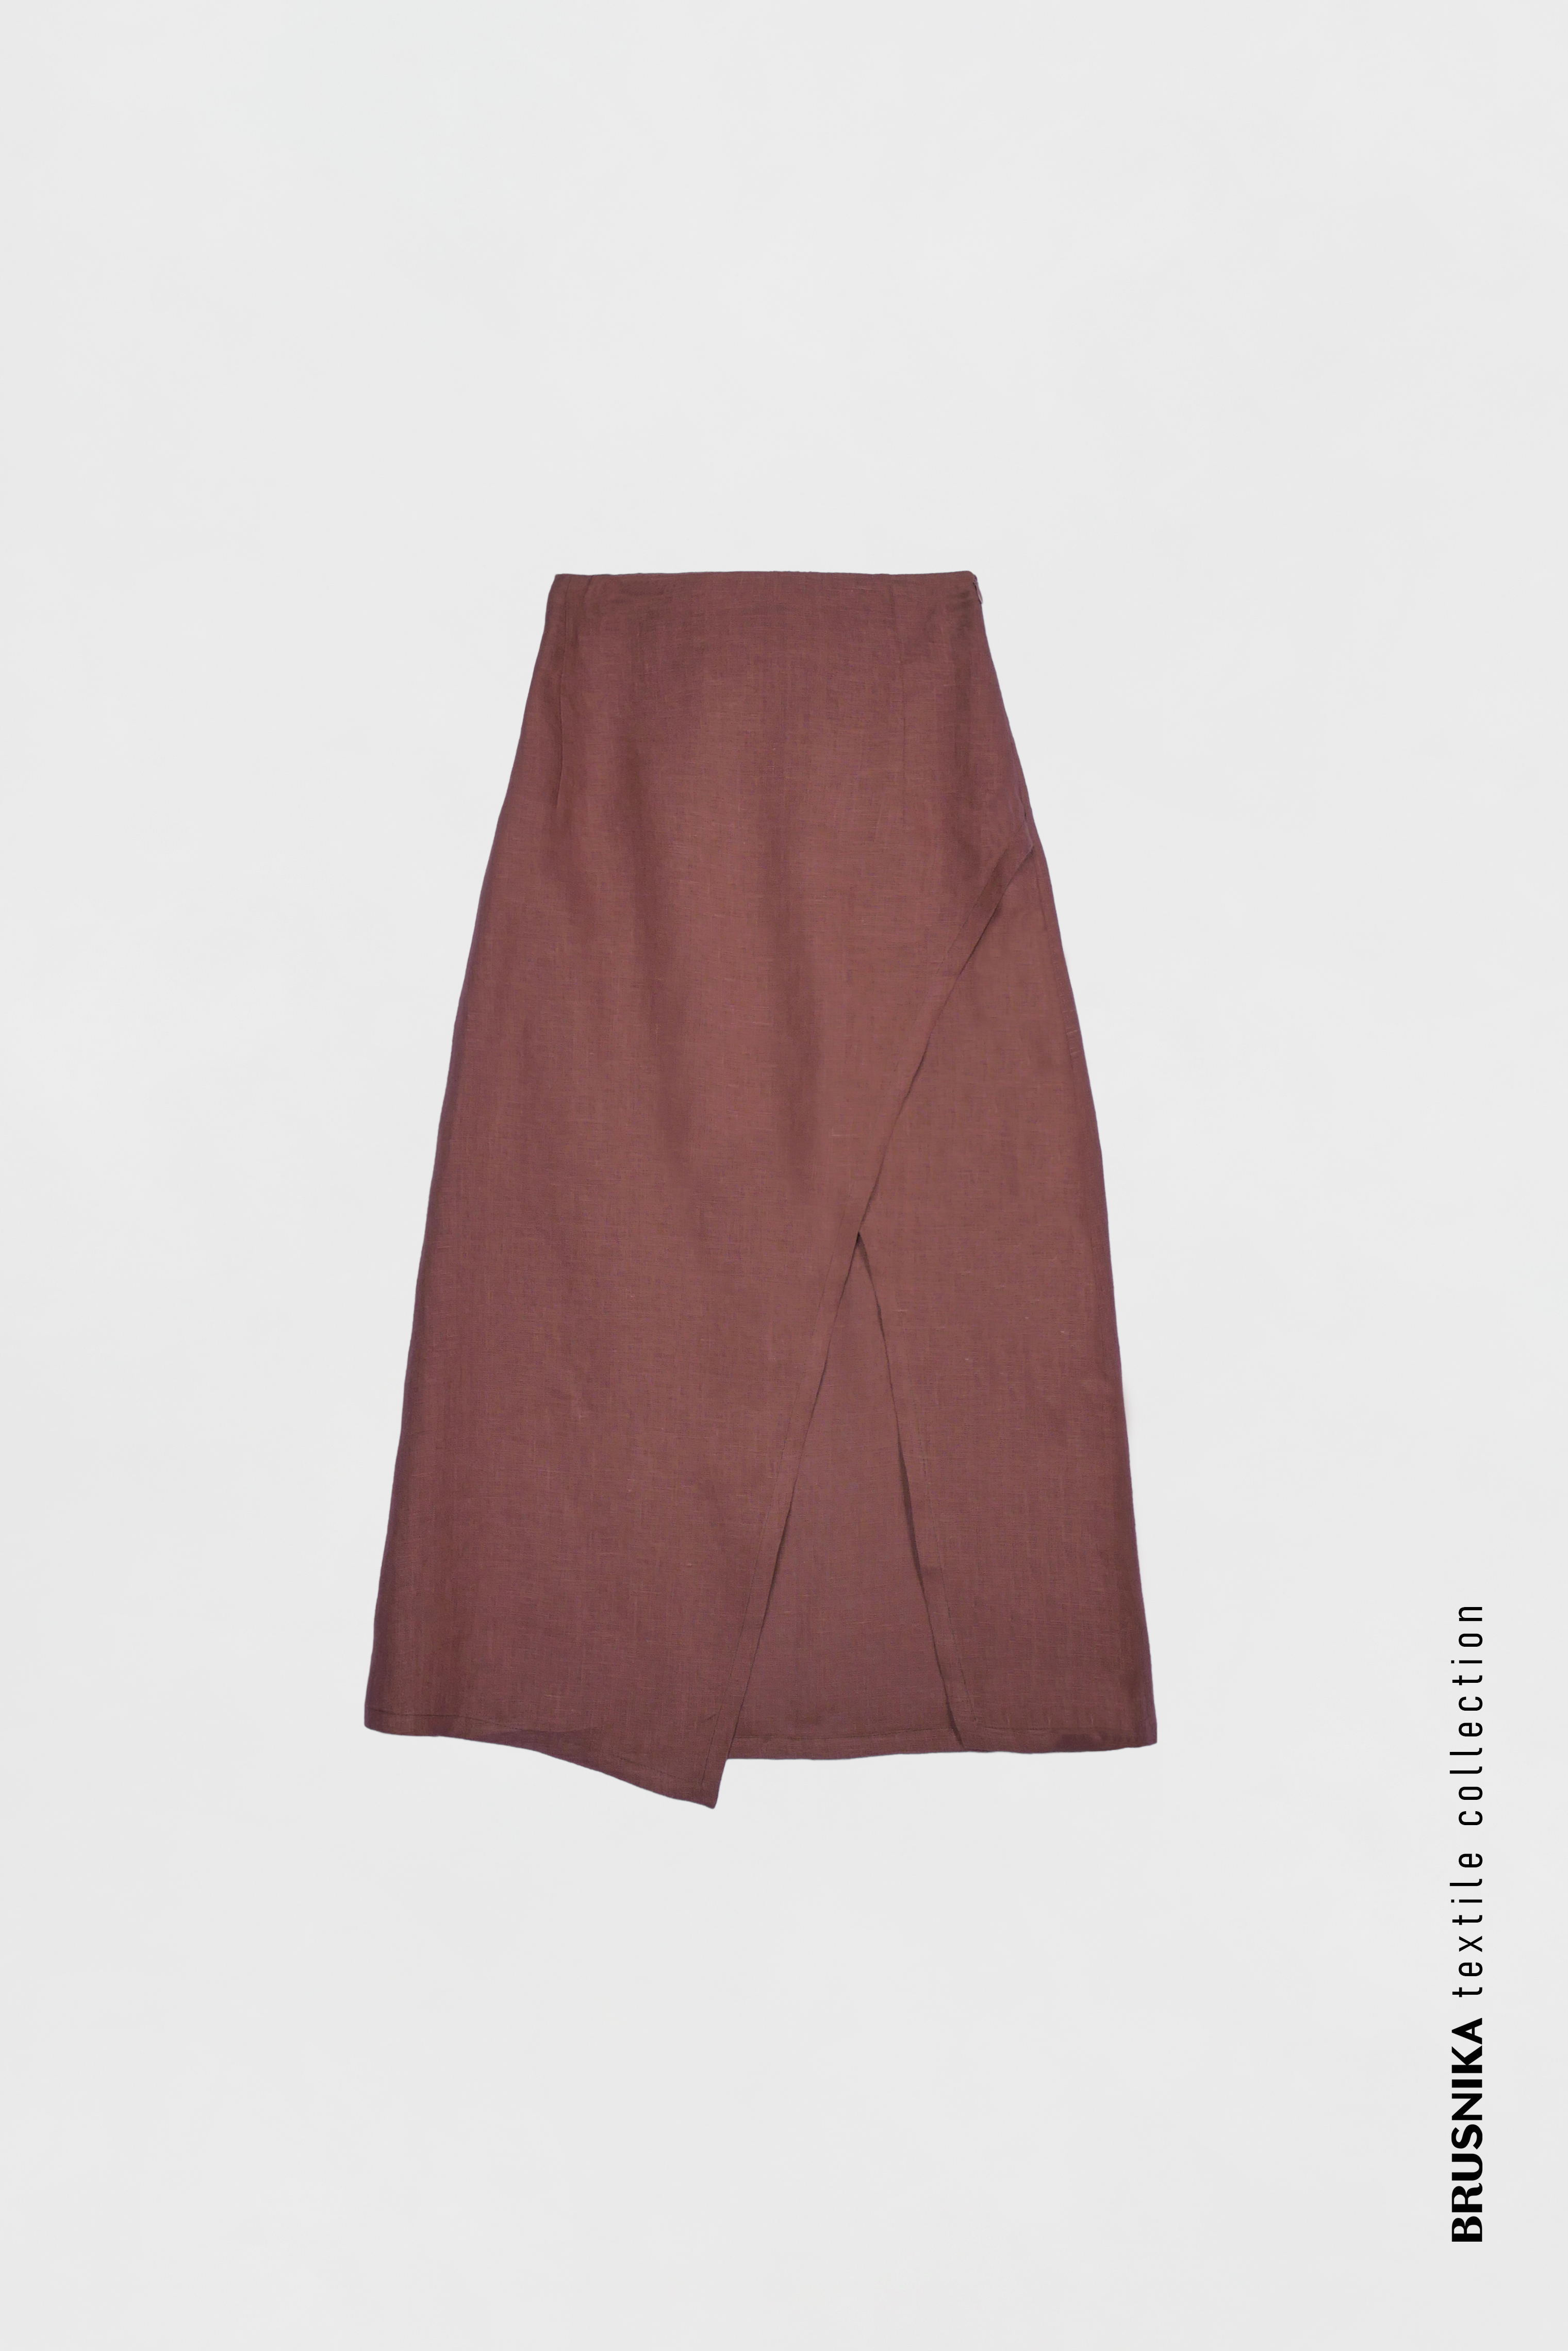 Skirt 3453-15 Brown from BRUSNiKA